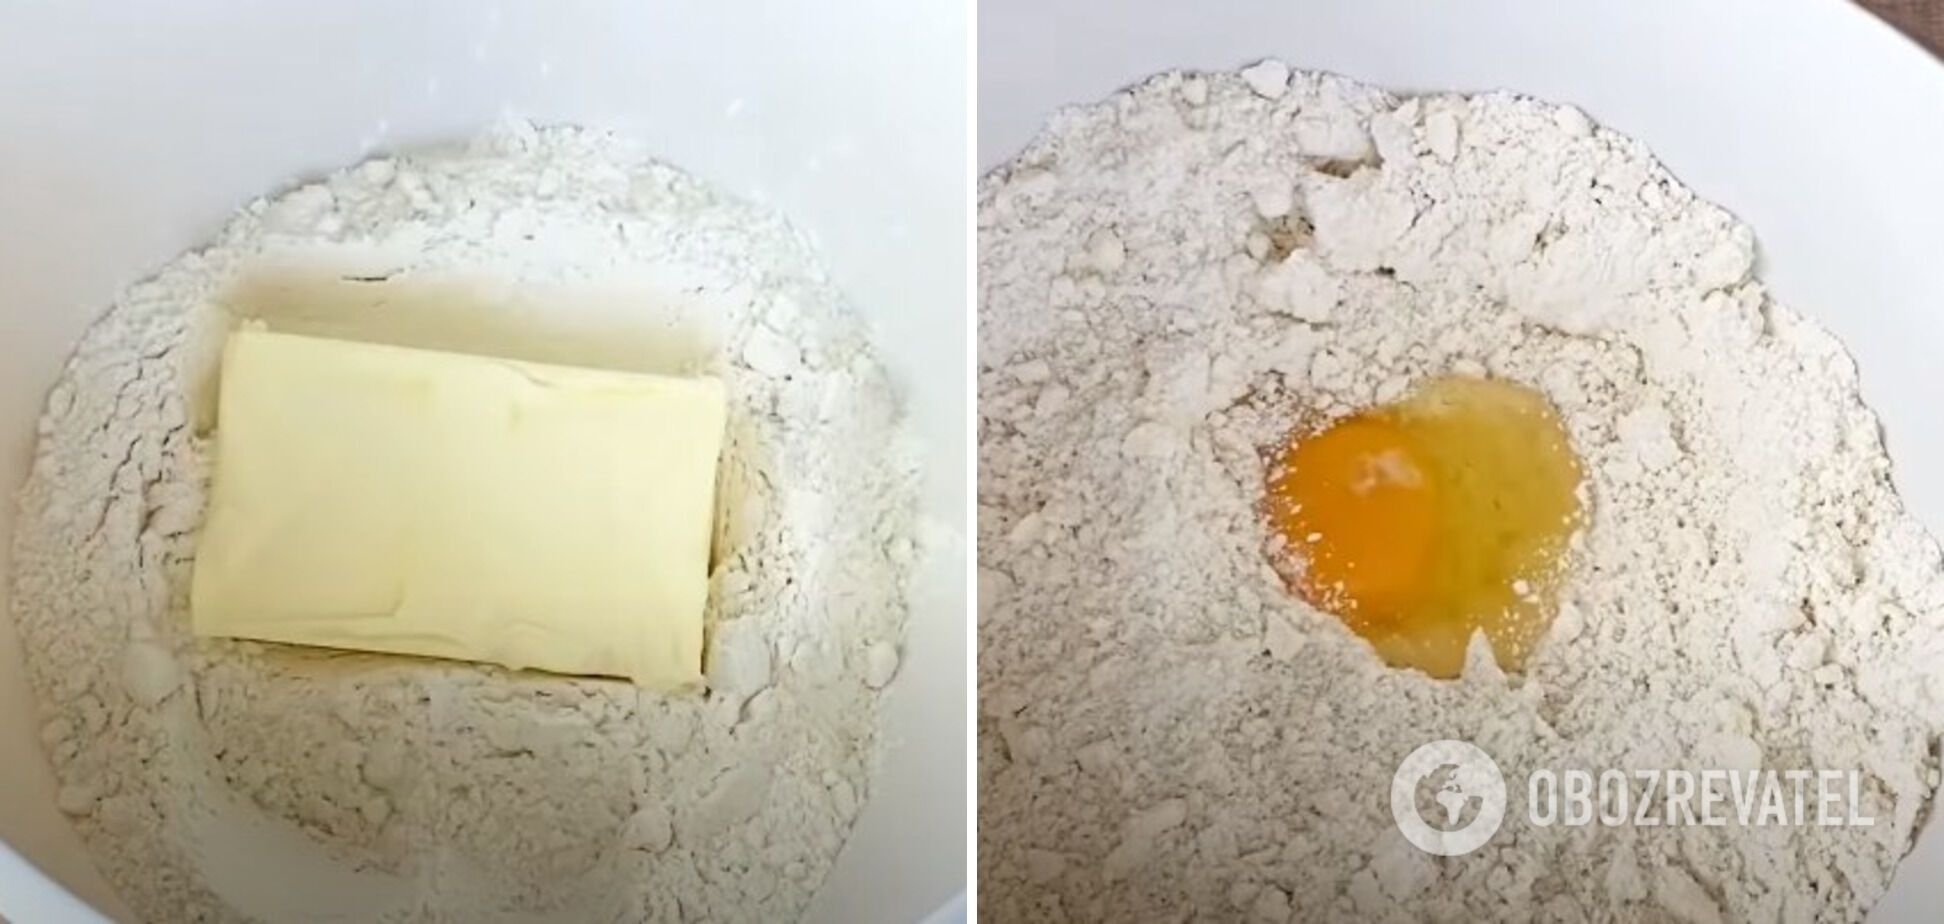 Eggs, sugar, and almond flour